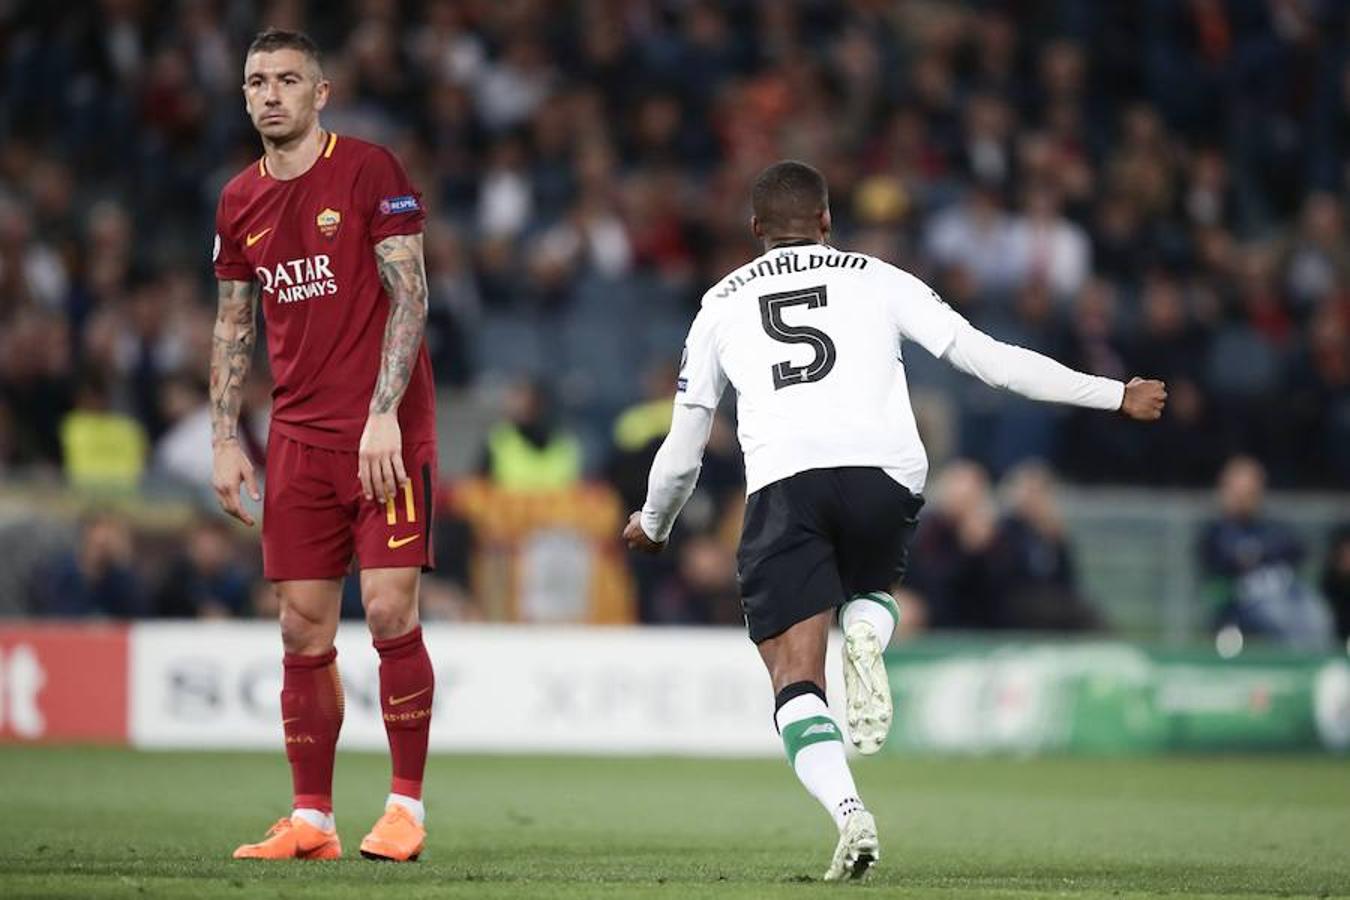 Al igual que en la ida la semifinal entre Roma y Liverpool fue muy interesante porque ambos equipos buscaron la meta rival y la encontraron. 